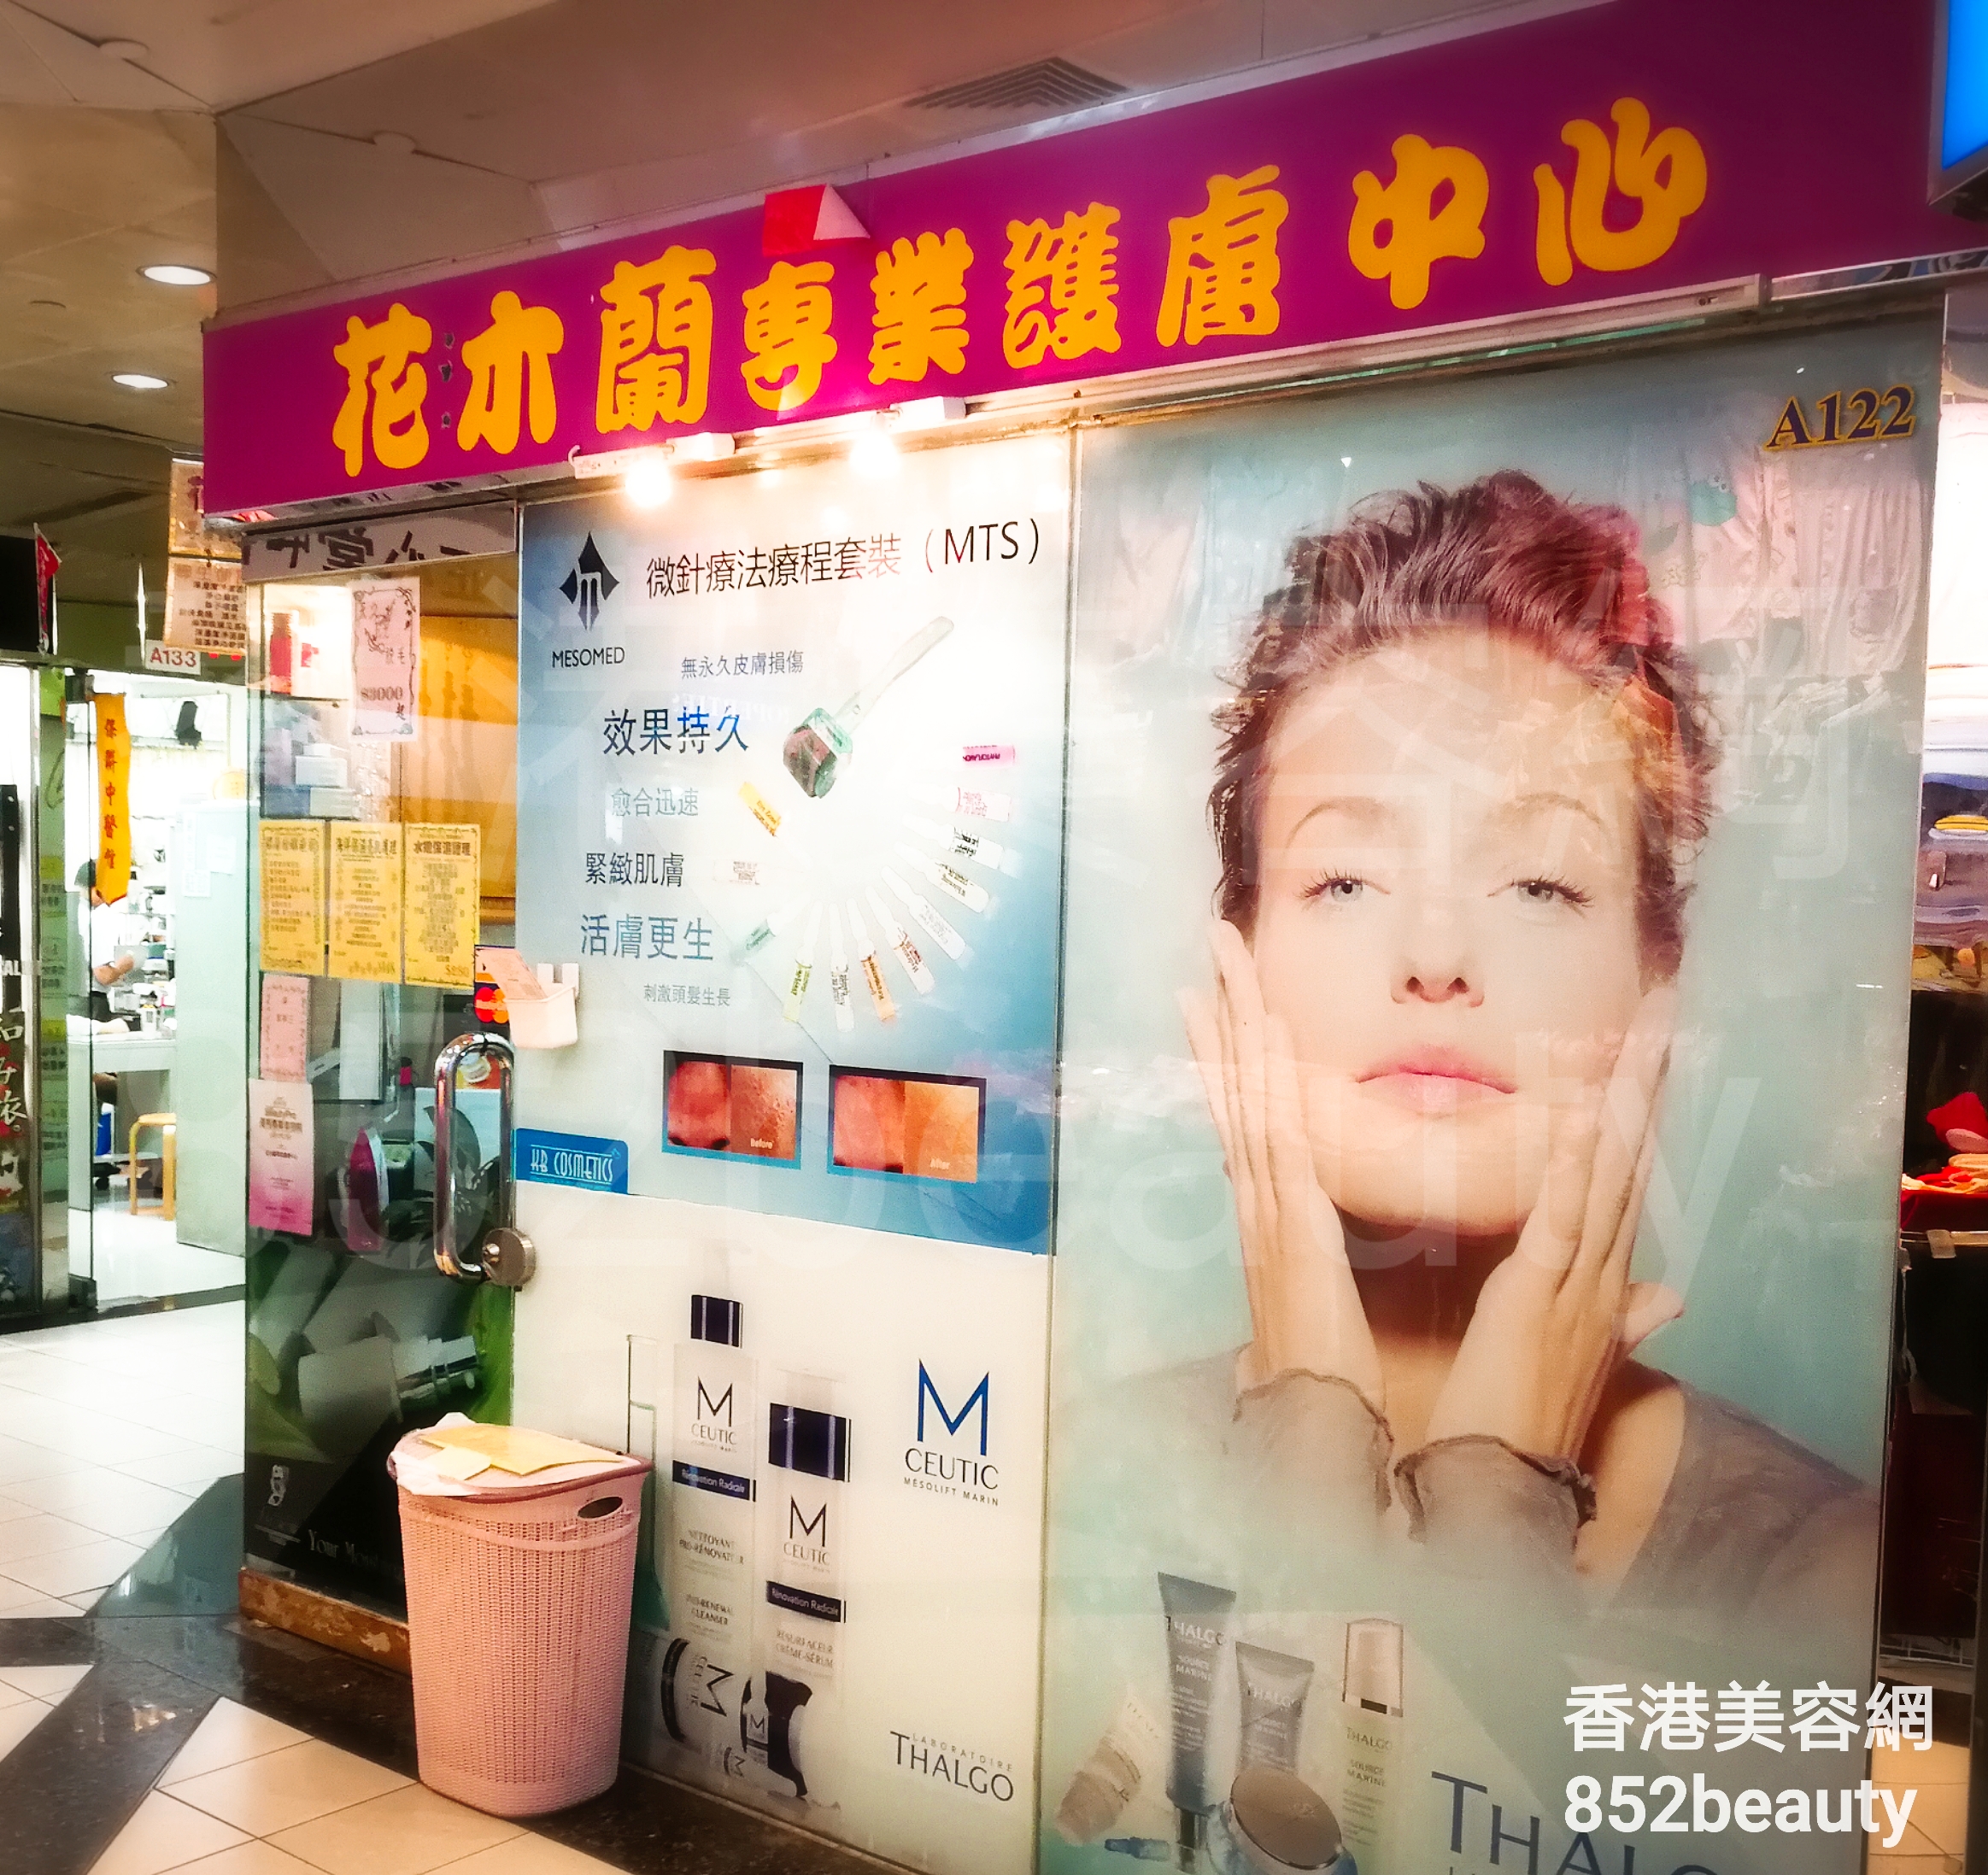 面部護理: 花木蘭 專業護膚中心